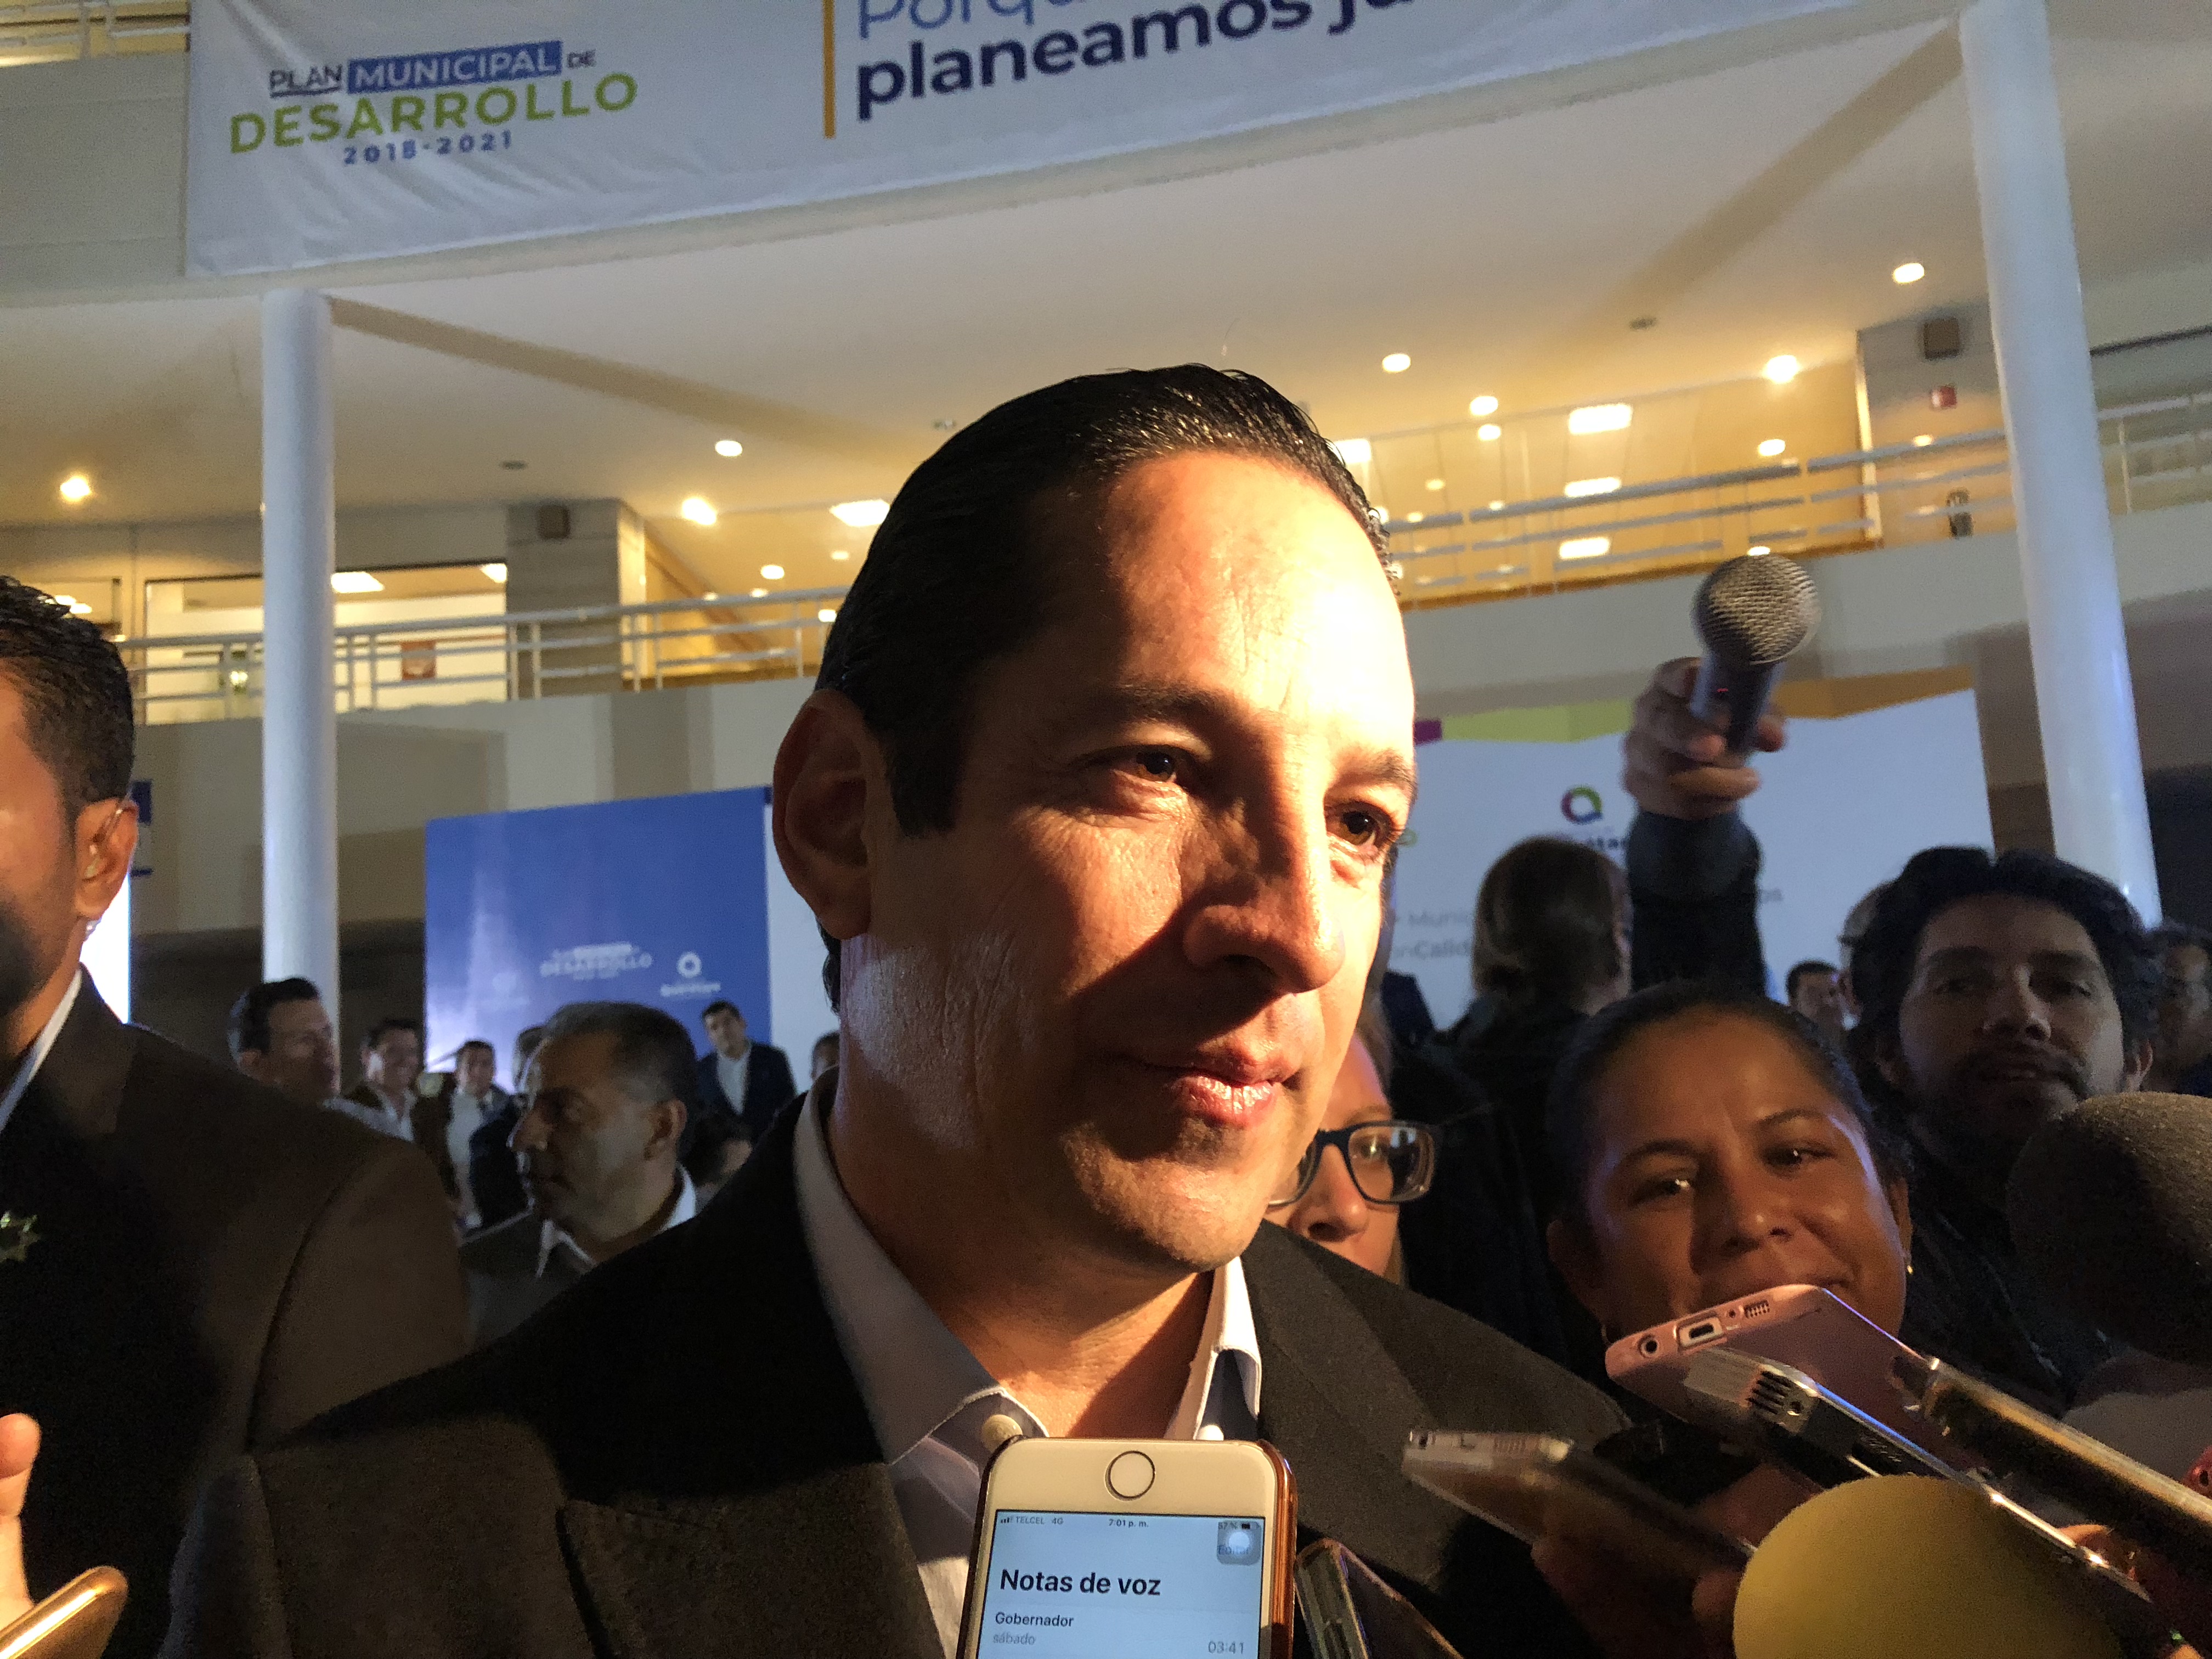  Pancho Domínguez dice que mantendrá “prudencia” respecto a Plan de Paz y Seguridad de AMLO